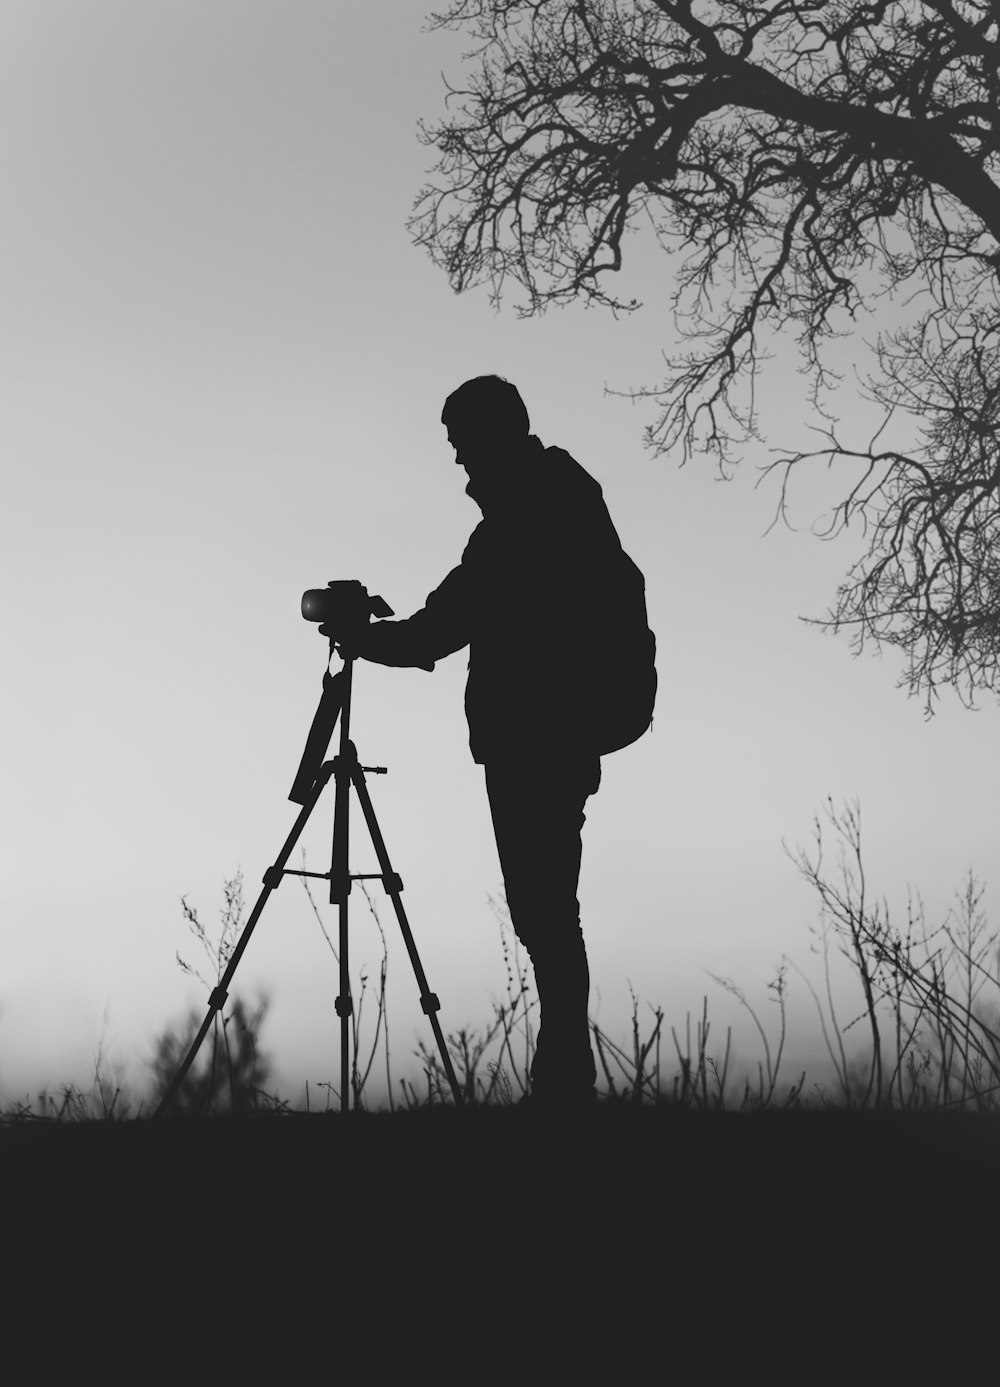 foto di silhouette dell'uomo davanti alla fotocamera DSLR con treppiede sotto l'albero senza foglie